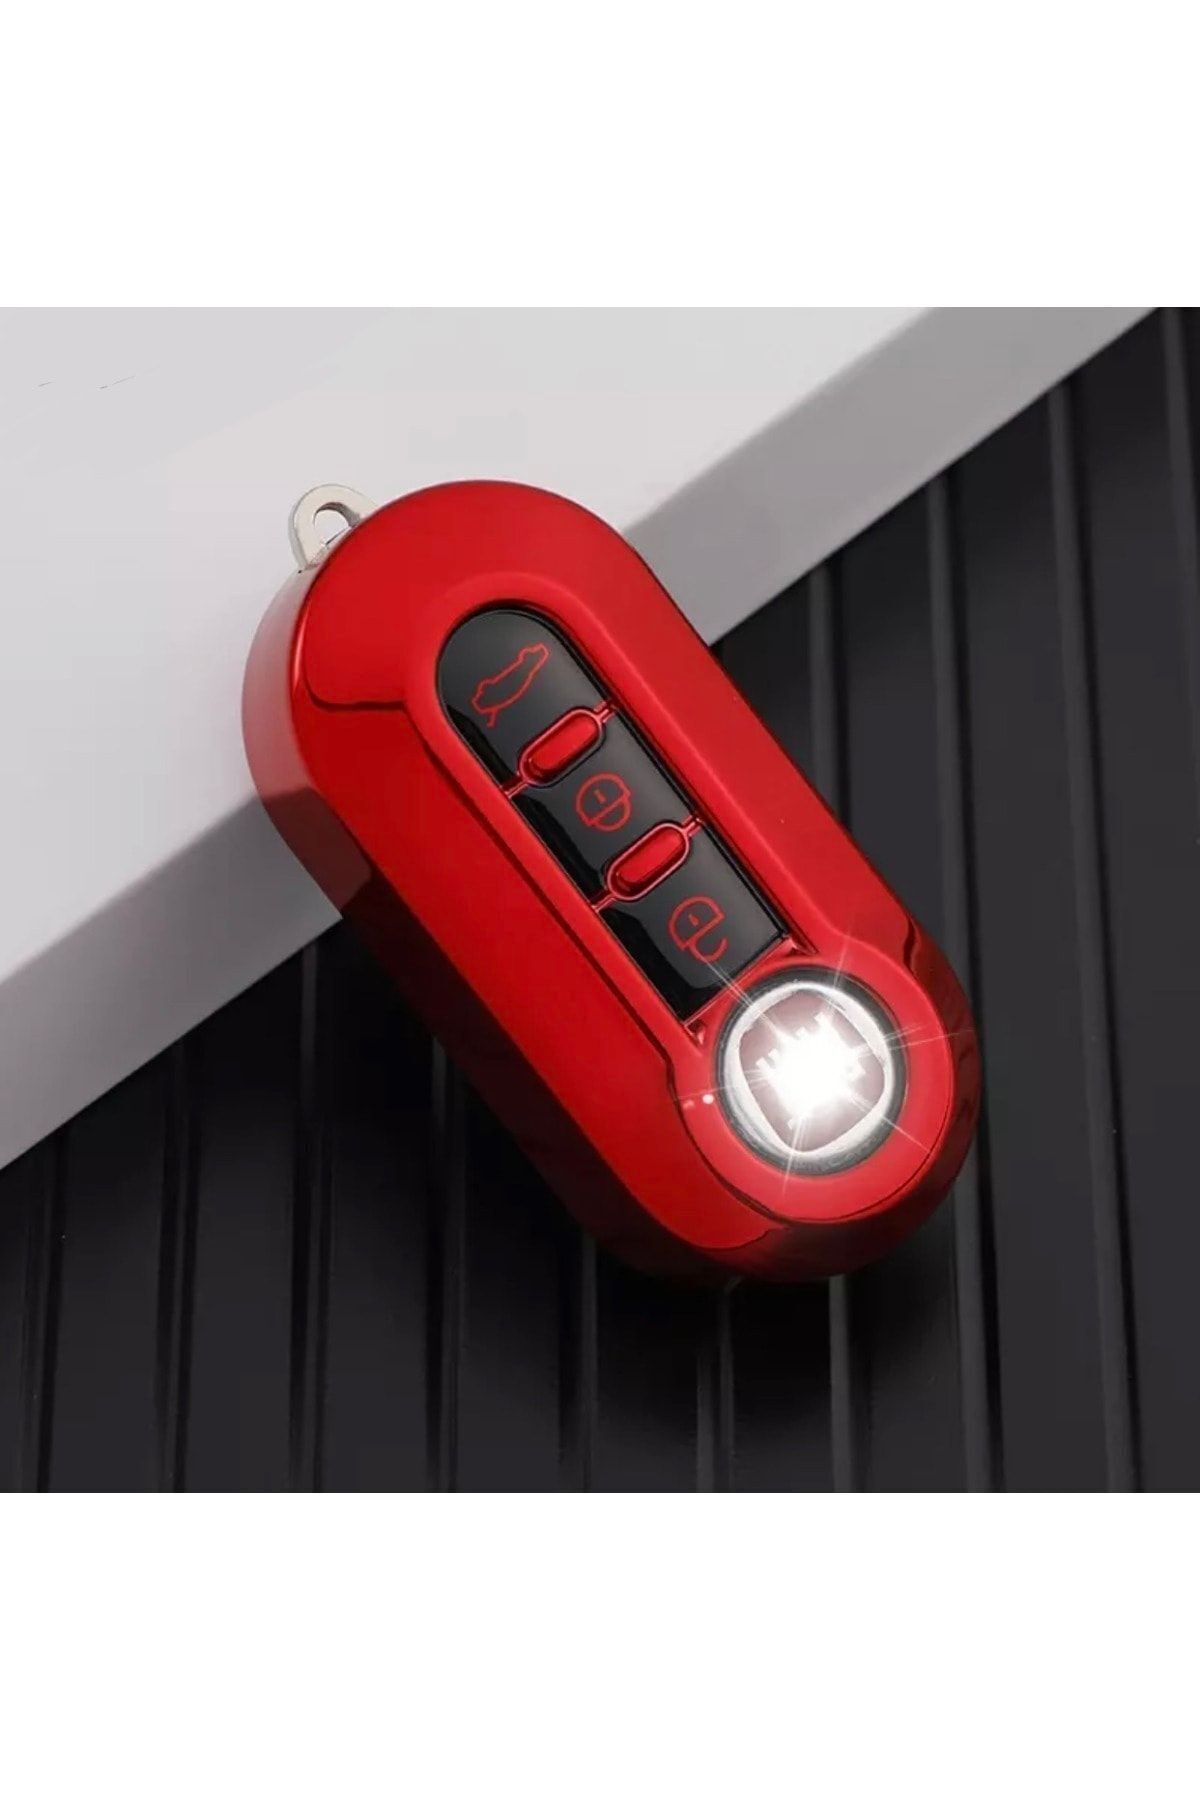 YıldızTuning Fiat Doblo Fiorino Linea 500 Anahtar Kılıfı Parlak Kırmızı